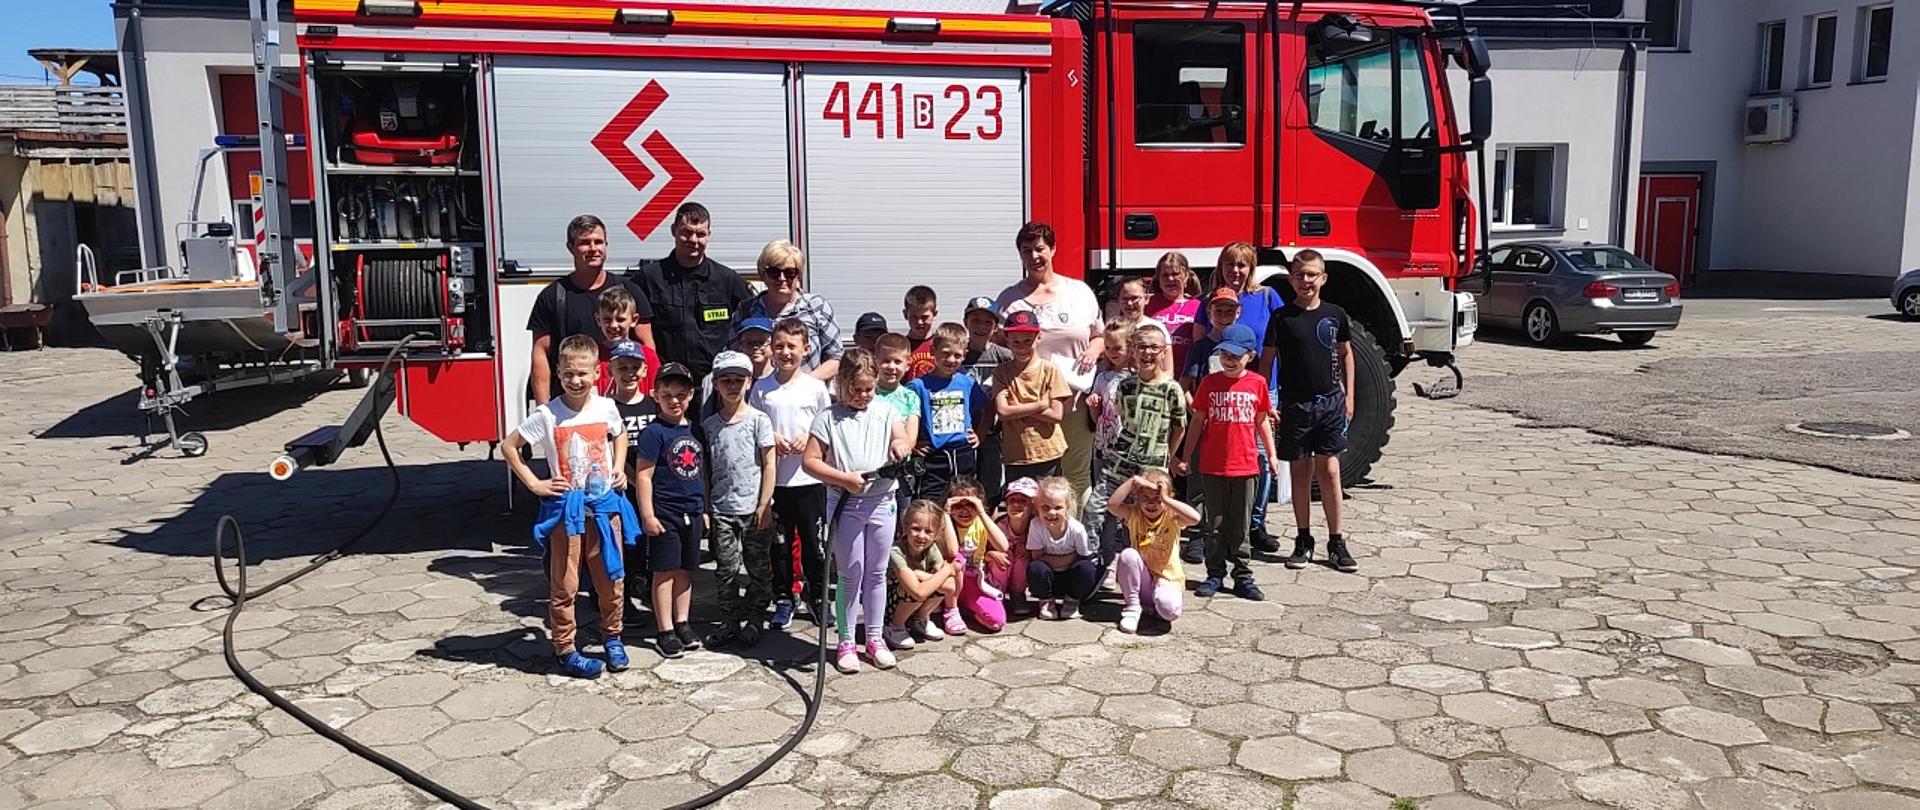 Na zdjęciu widać grupę dzieci z nauczycielkami i strażakami przed wozem bojowym